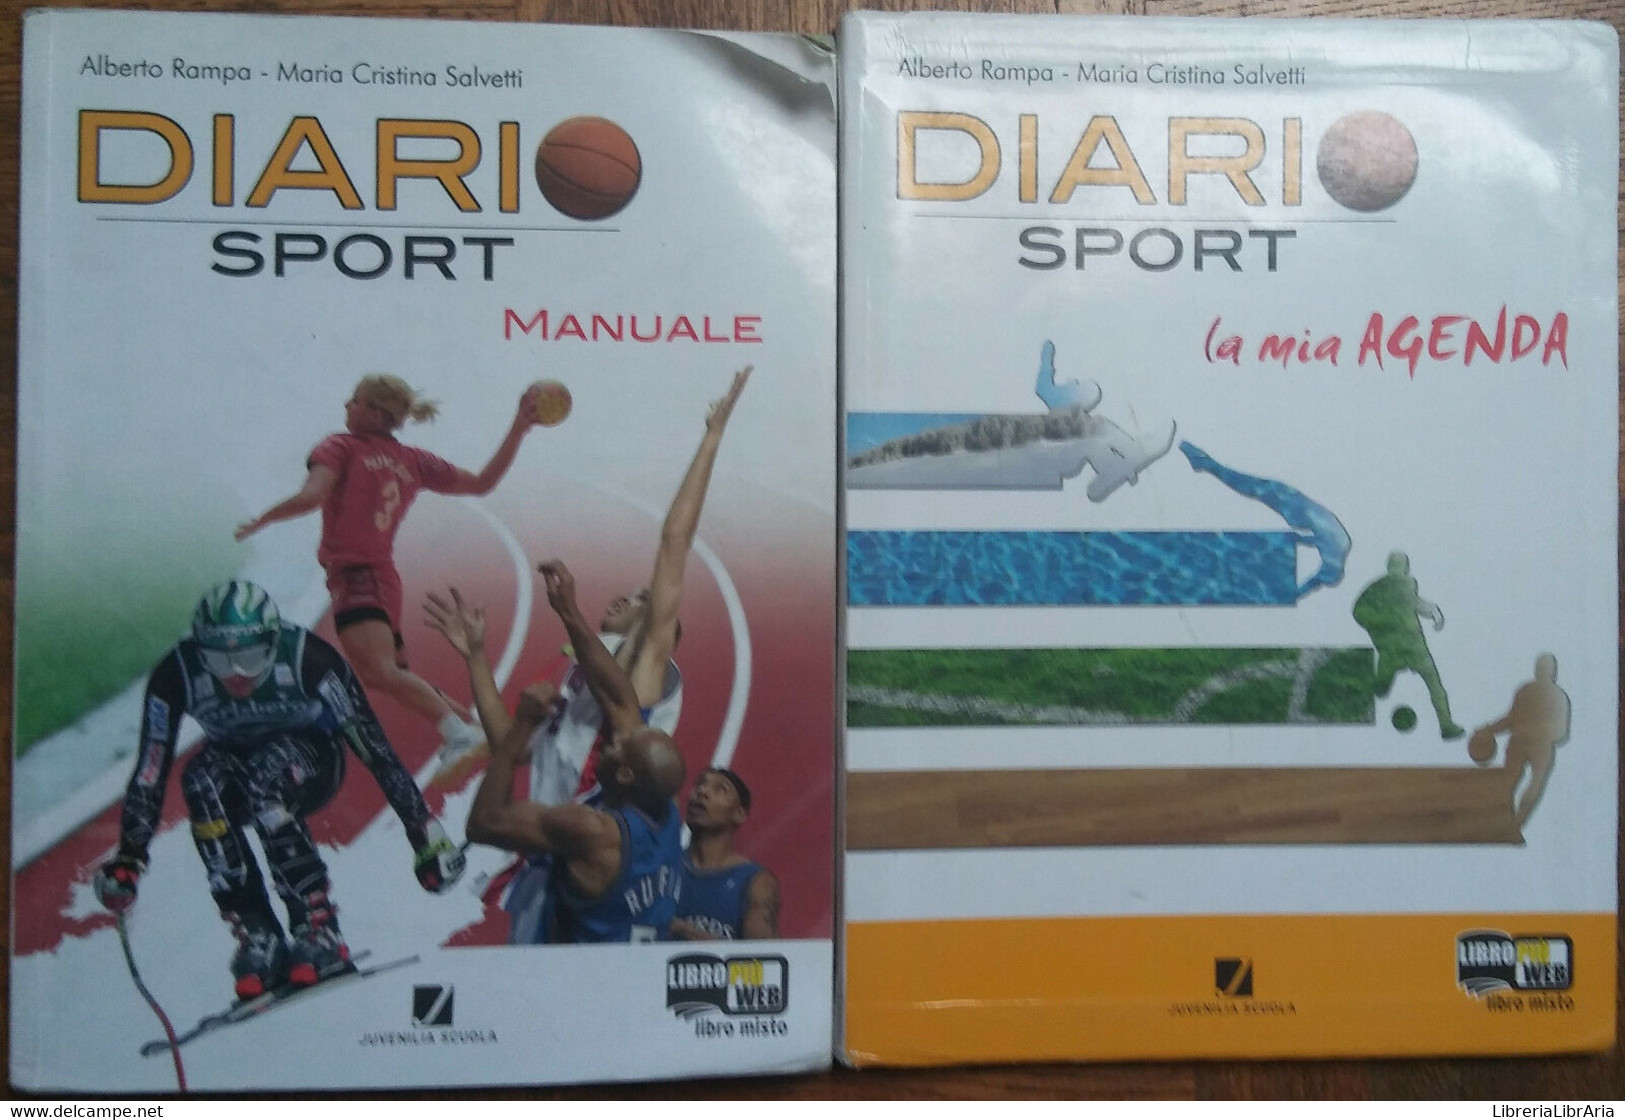 Diario Di Sport Manuale Agenda-Alberto Rampa;MCristina Salvetti-Juvenilia,2010-R - Teenagers